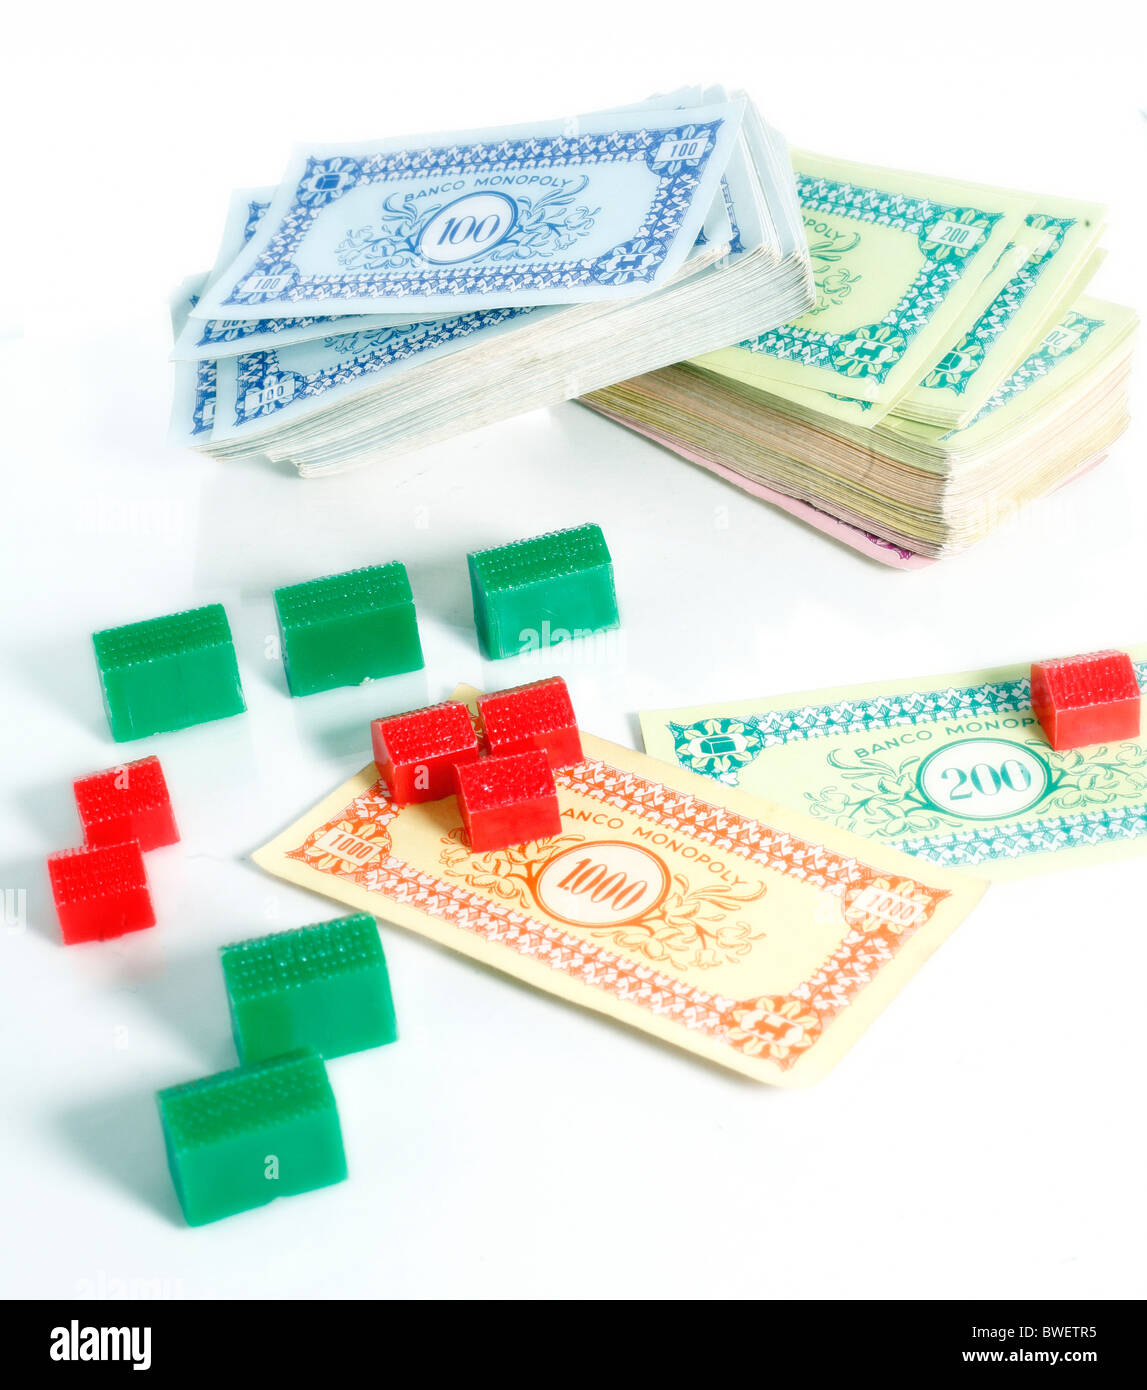 Monopoly Stock Photo